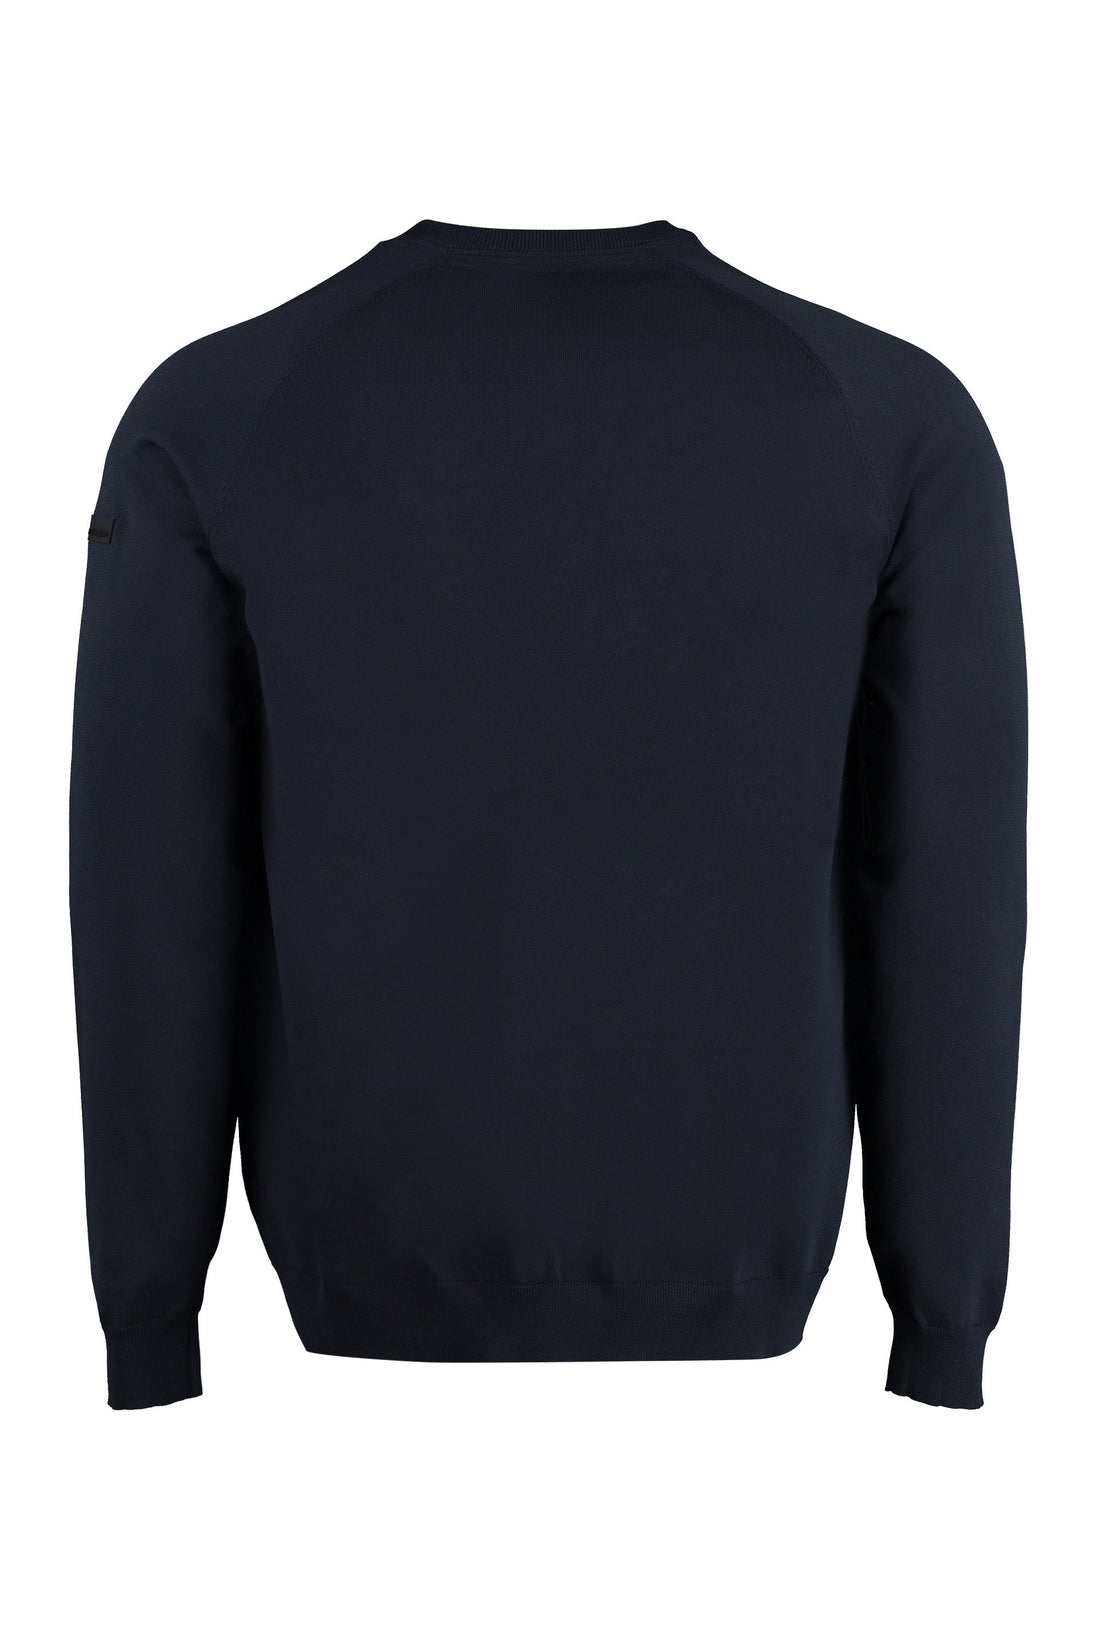 RRD-OUTLET-SALE-Nylon sweater-ARCHIVIST